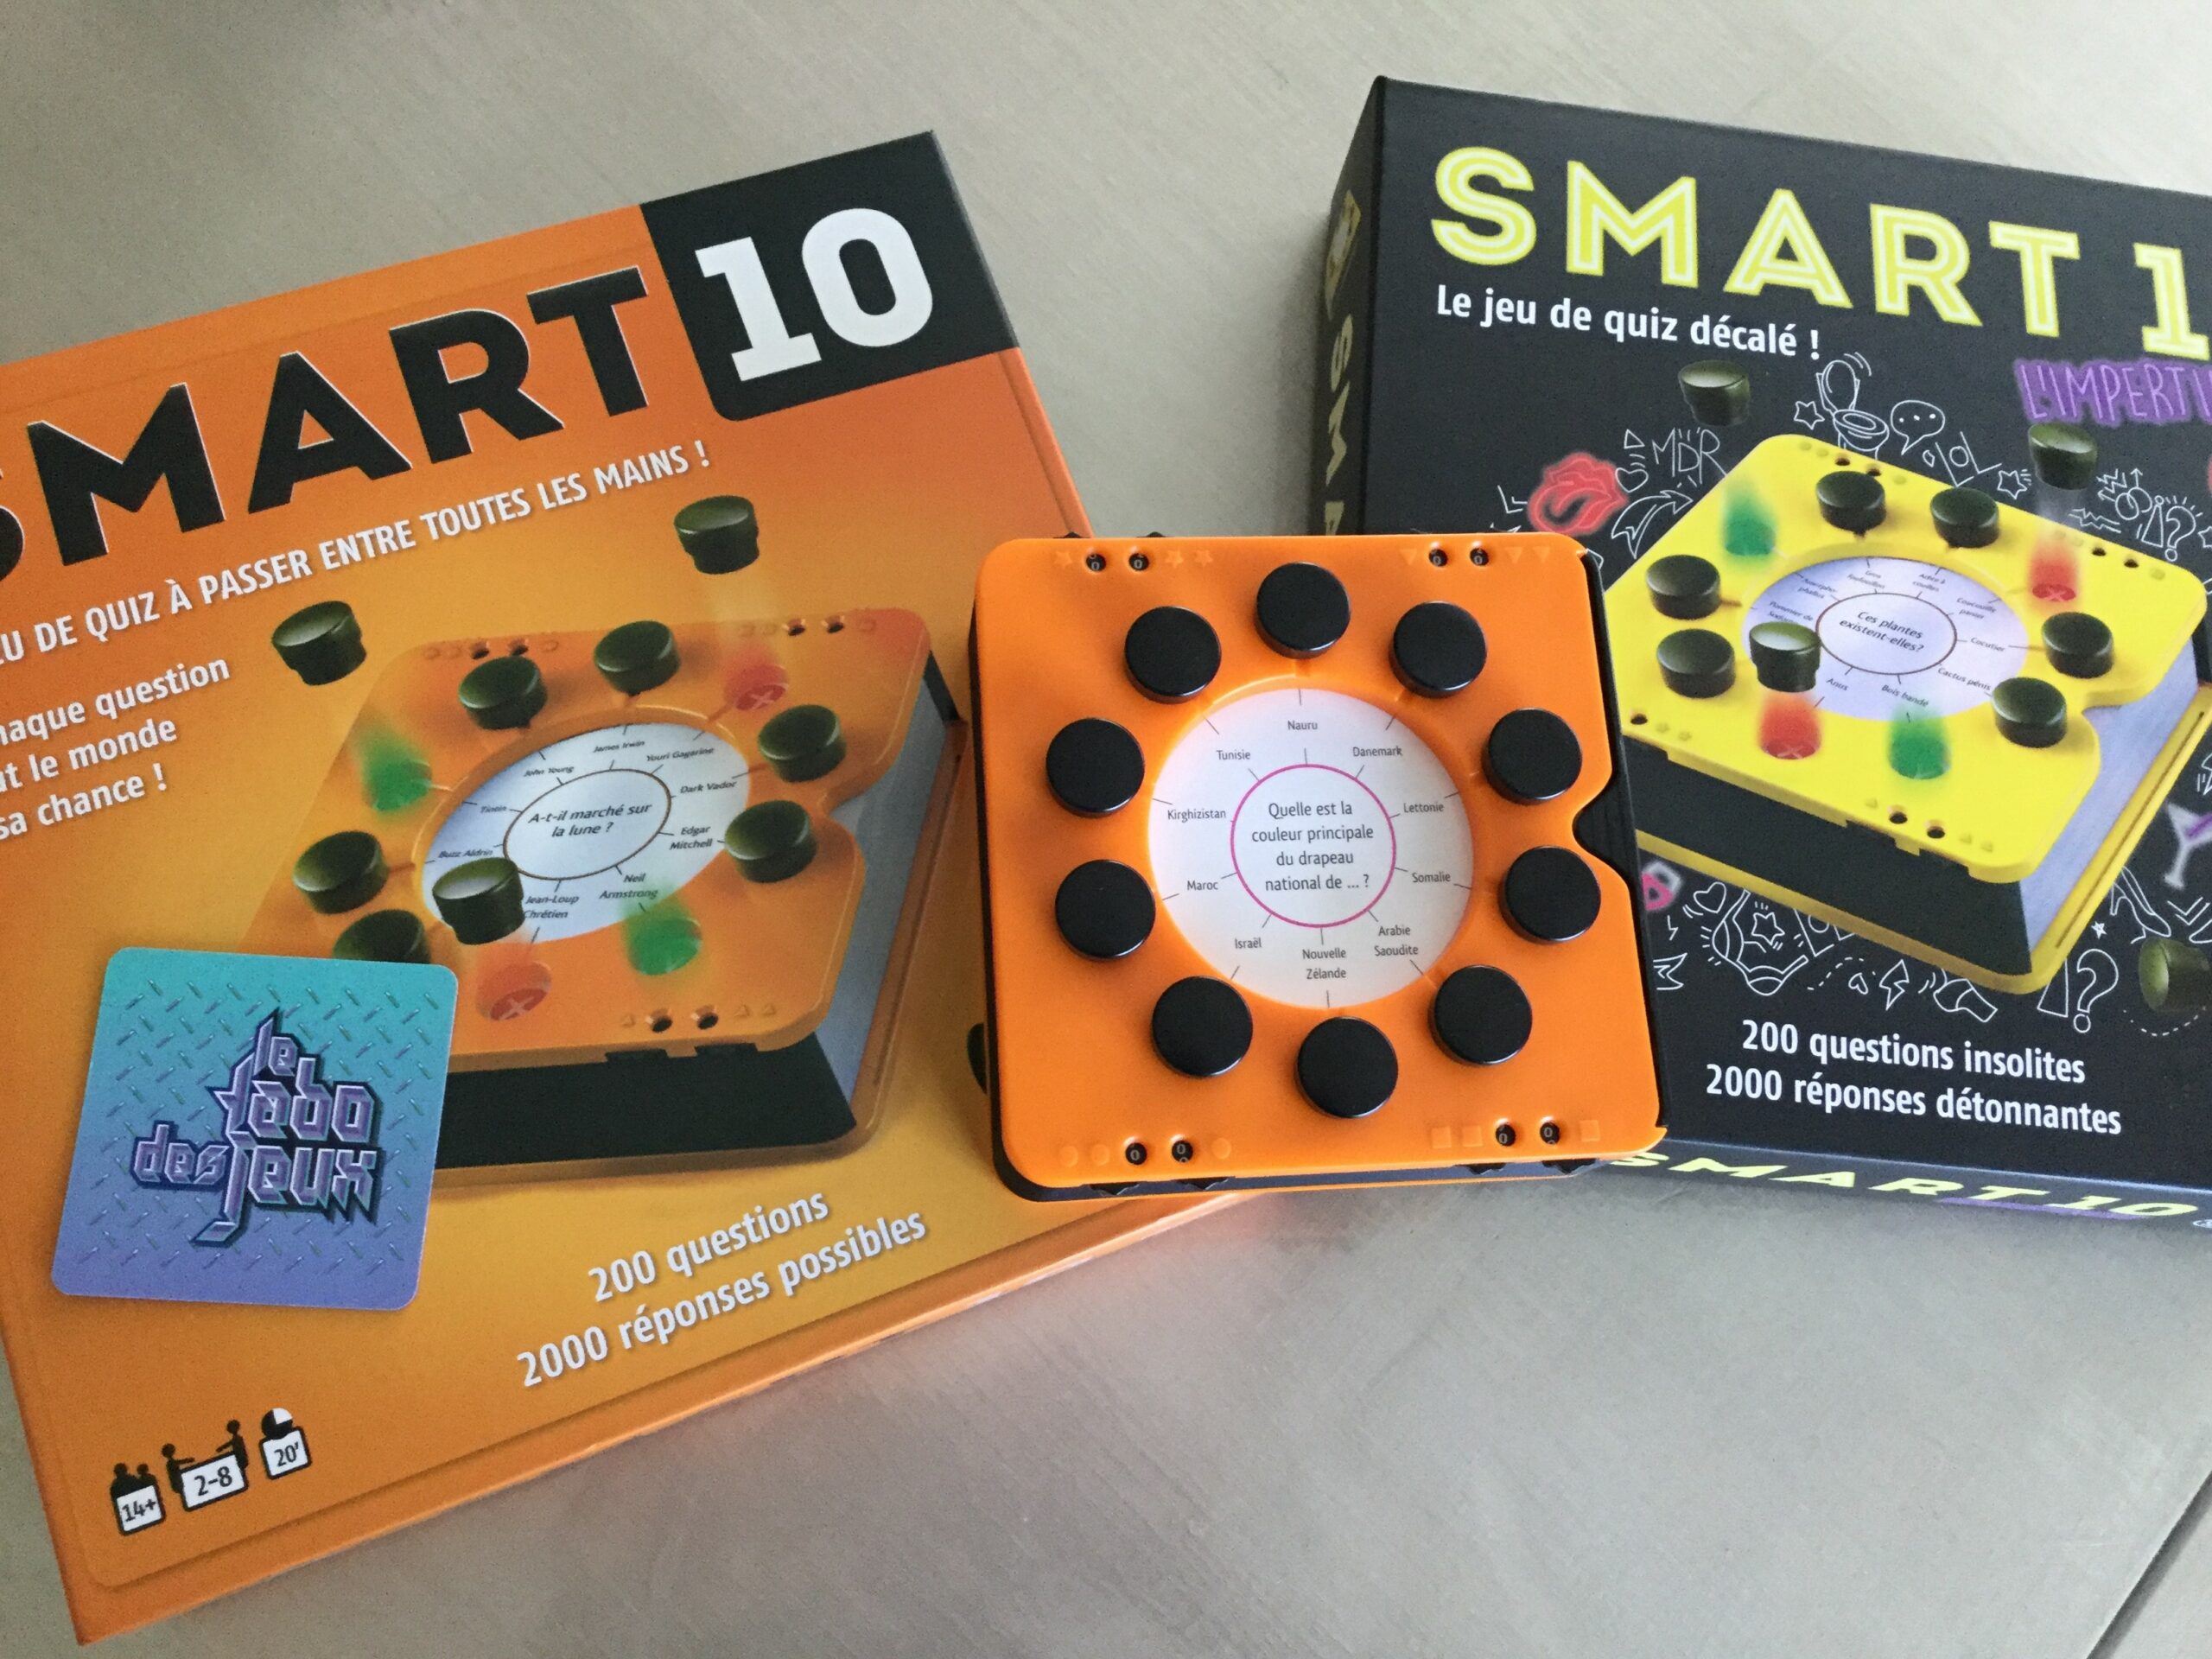 Smart 10 - un autre jeu